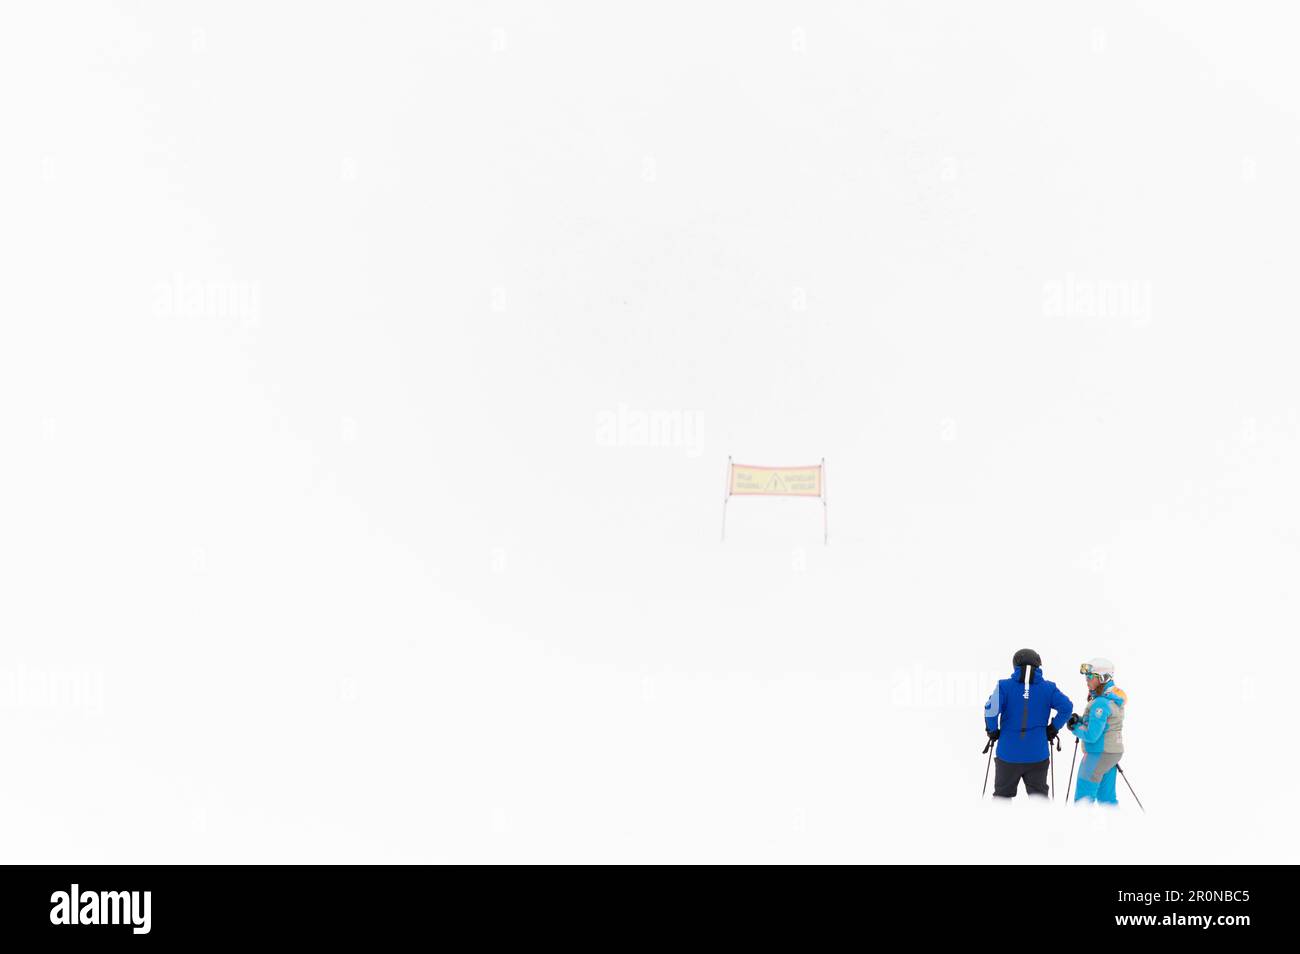 Limone Piemonte, Italie. Panorama des pistes de ski Banque D'Images